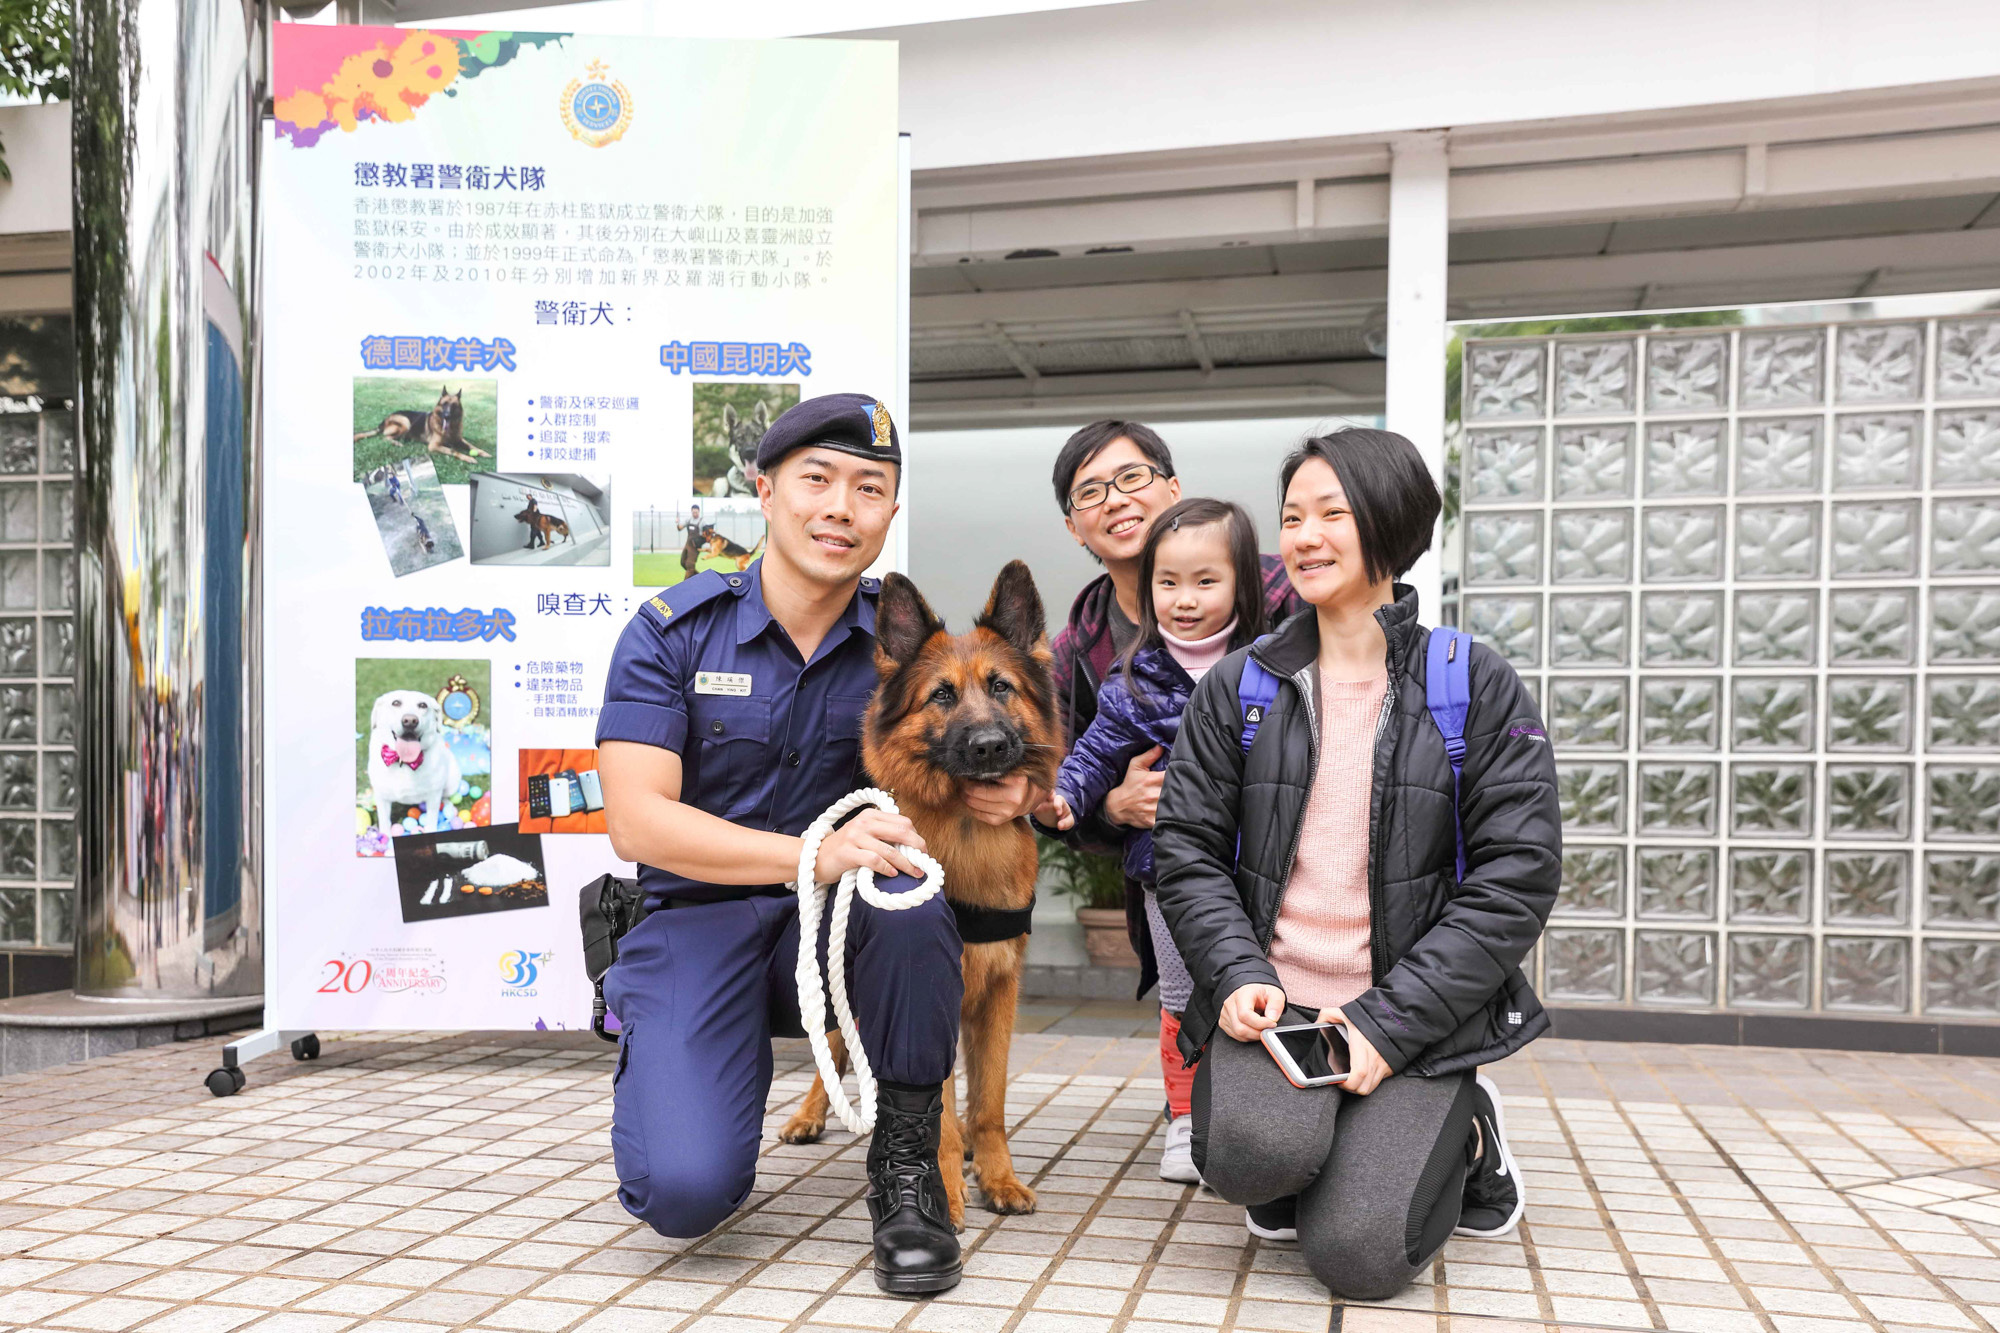 惩教人员及警卫犬于「惩教今昔35载」活动与参观者合照。